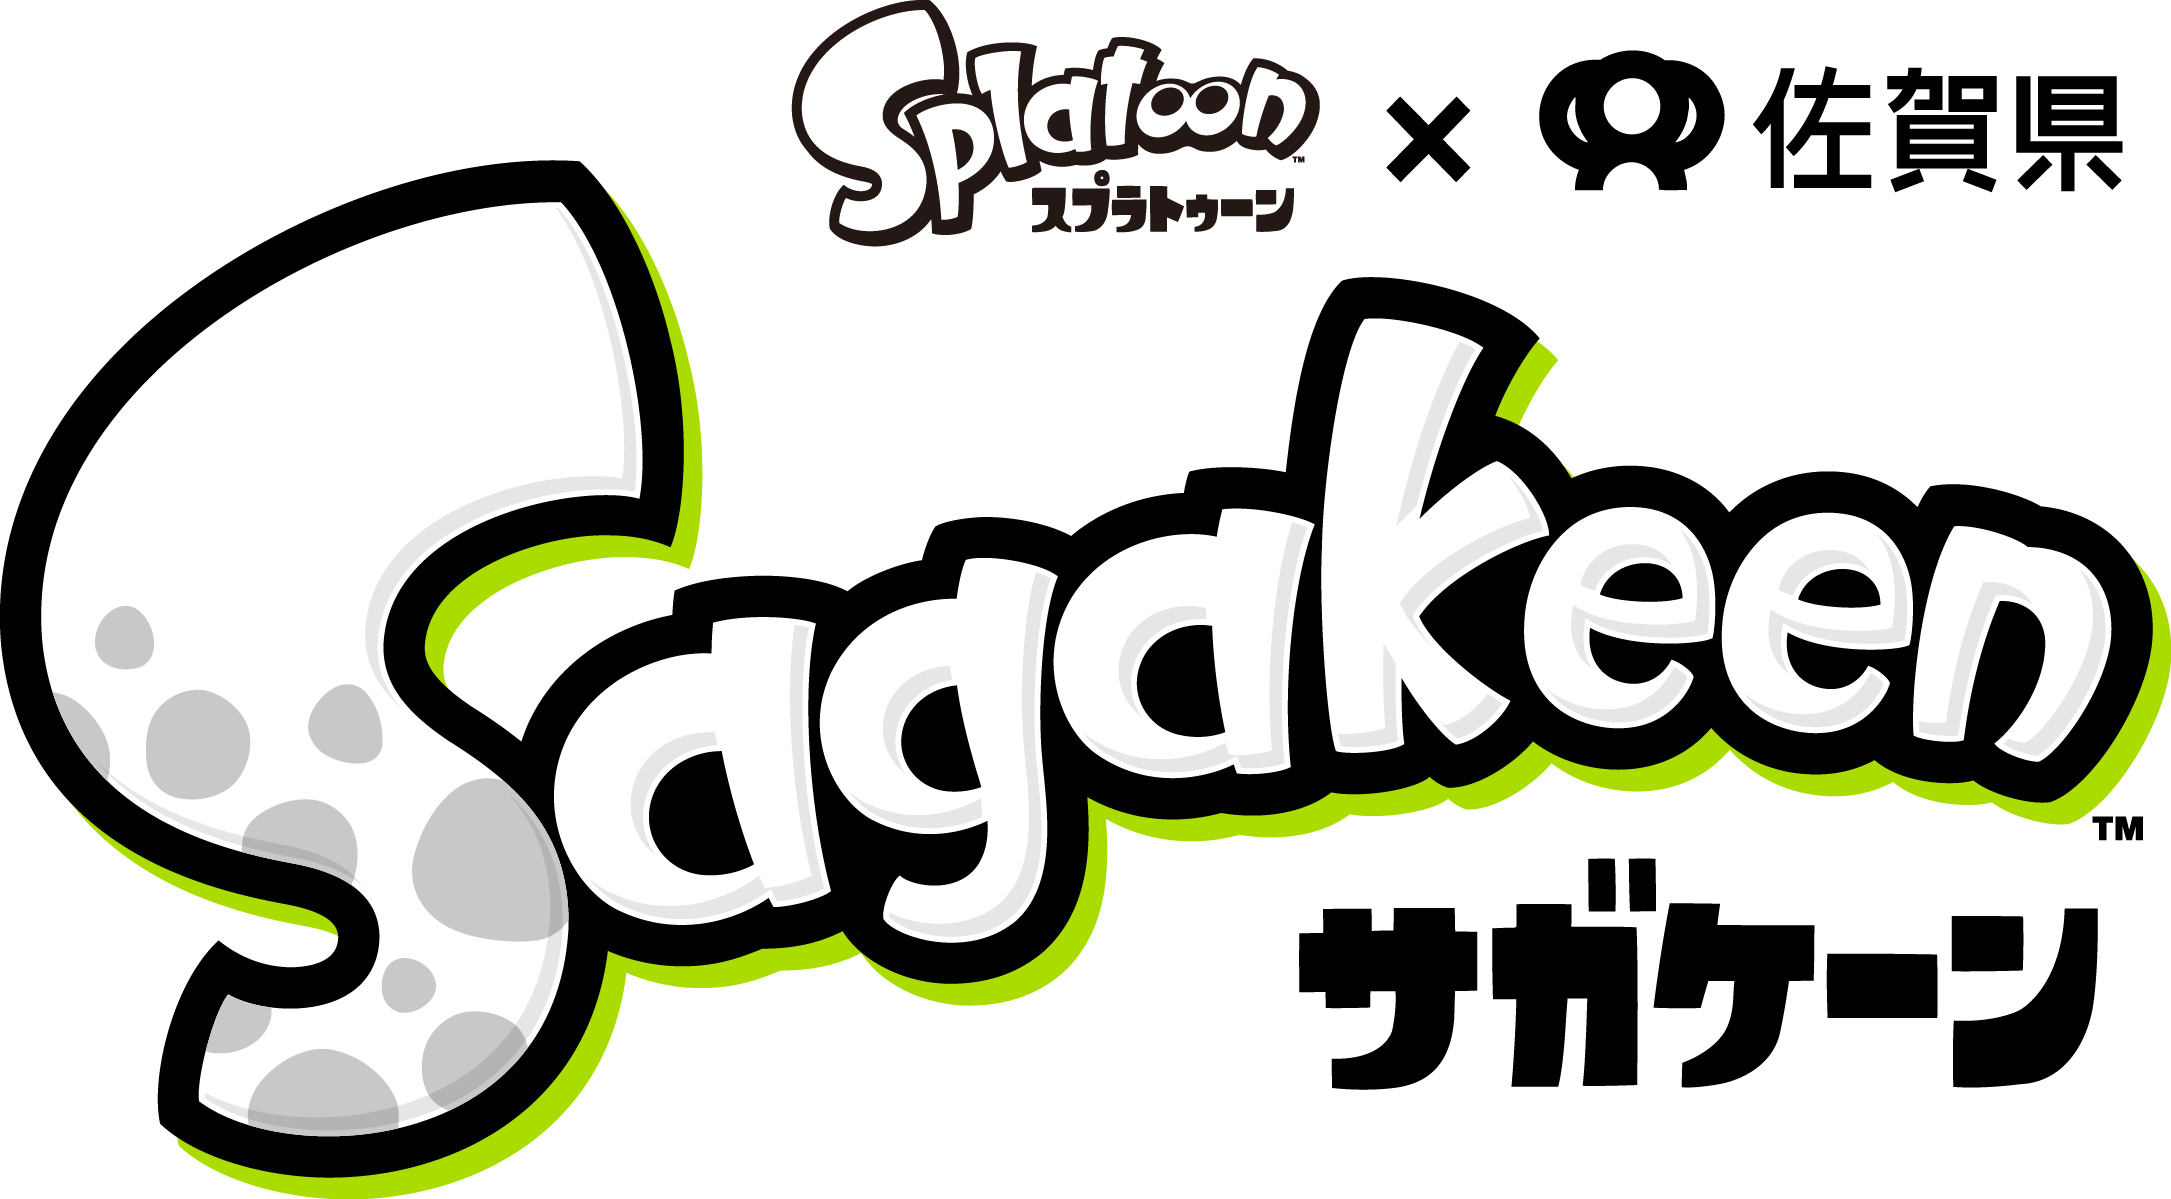 佐賀県の名産 呼子のイカ が大人気ゲーム Splatoon とコラボ その名も Sagakeen ガリガリ